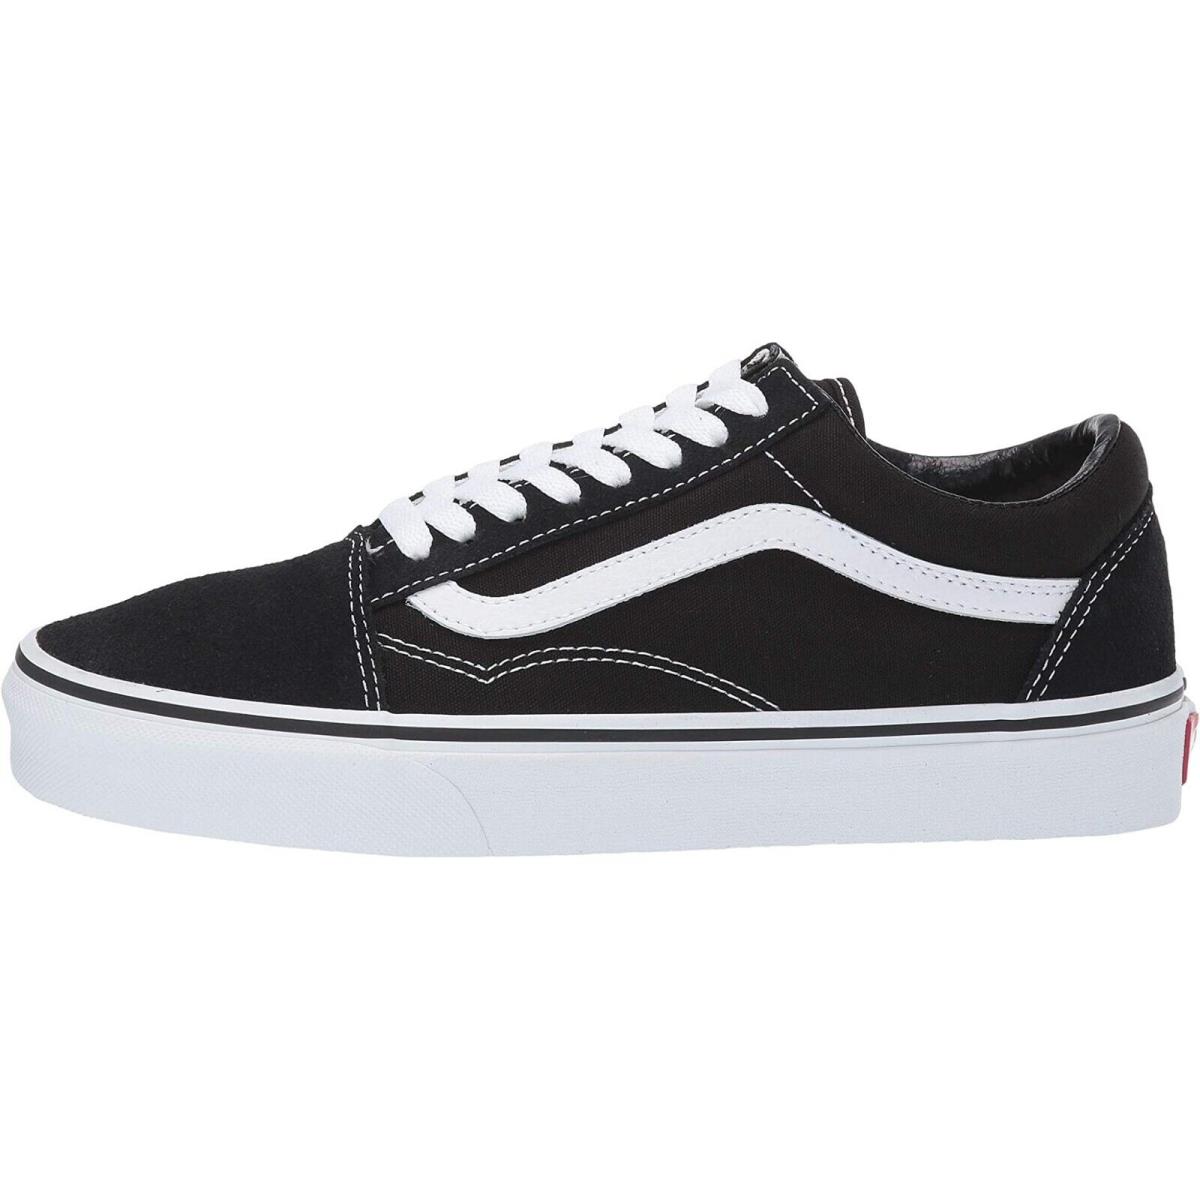 Vans Old Skool Unisex Suede Sneakers Mens Womens Skateboard Canvas Shoes Black/White